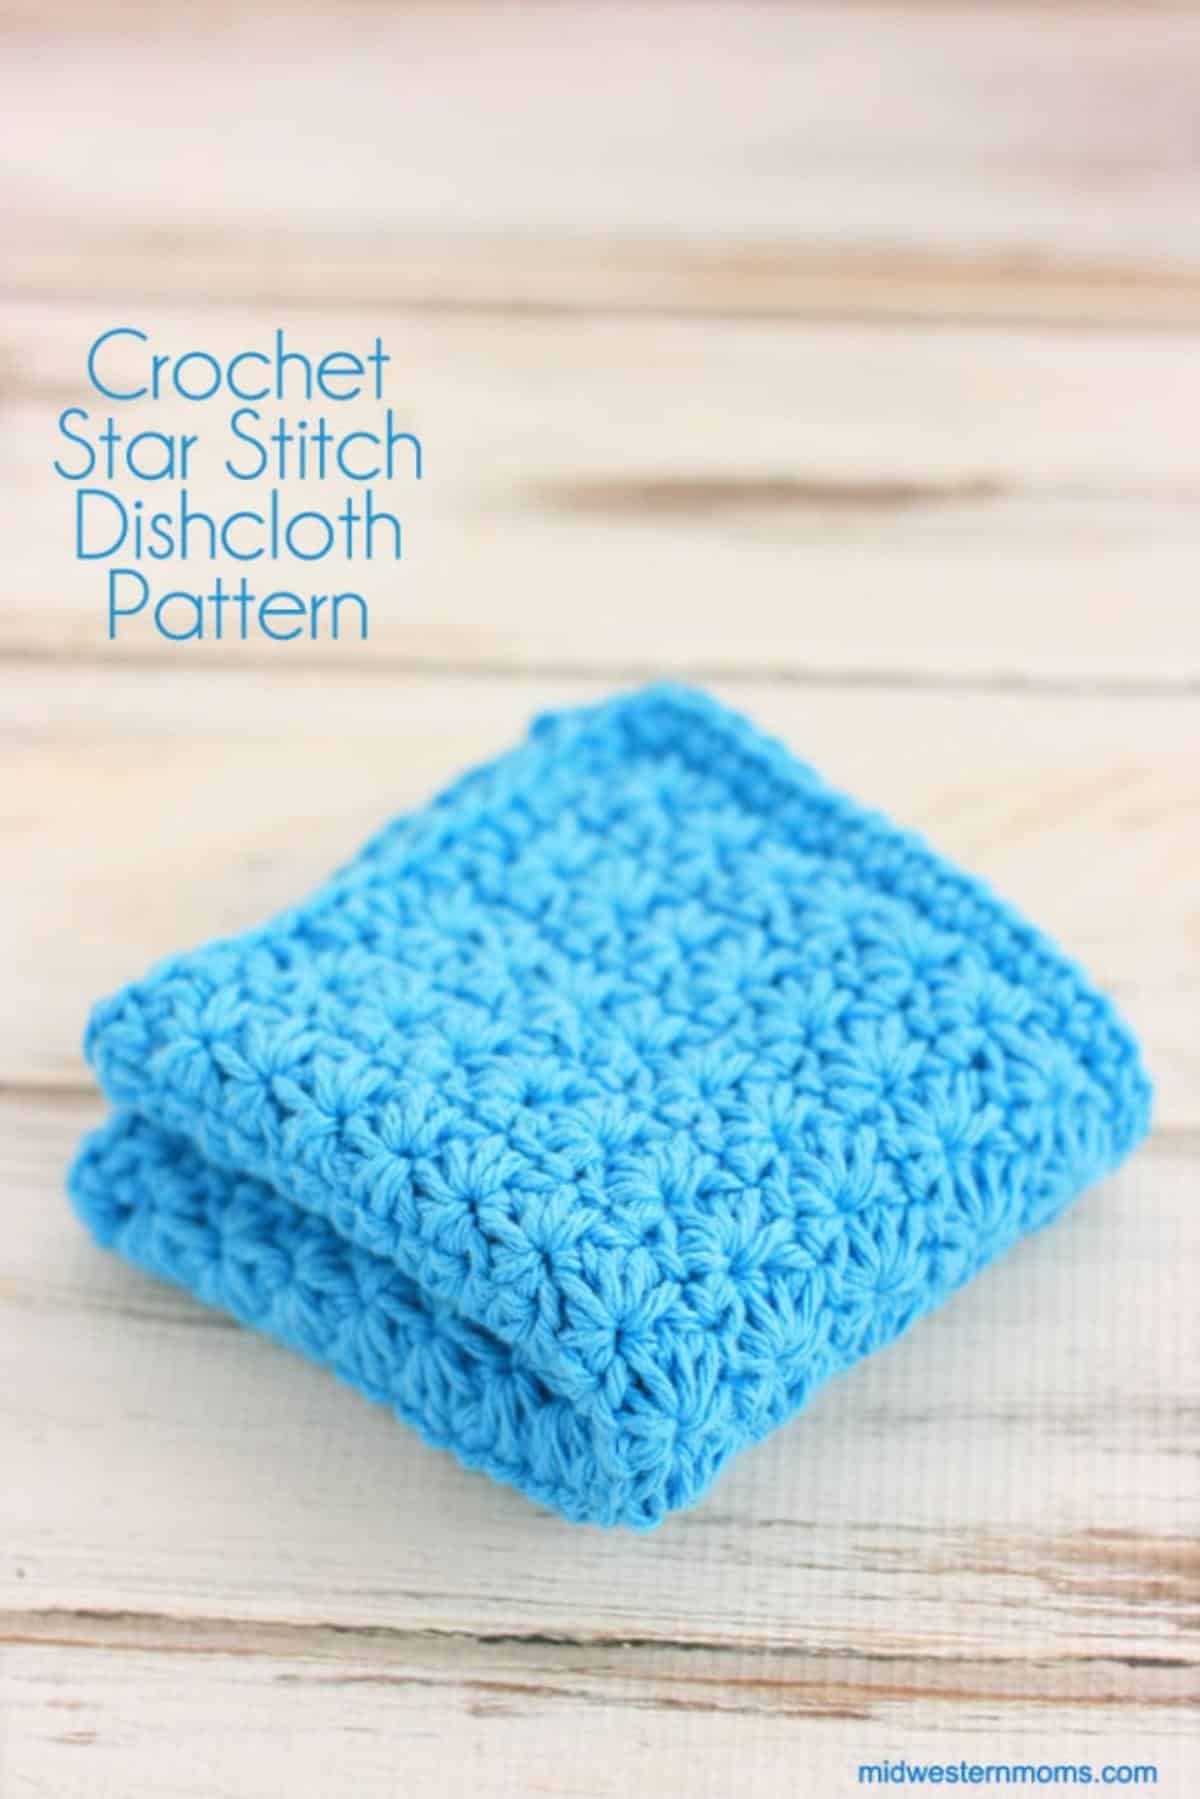 Star Stitch Dishcloth